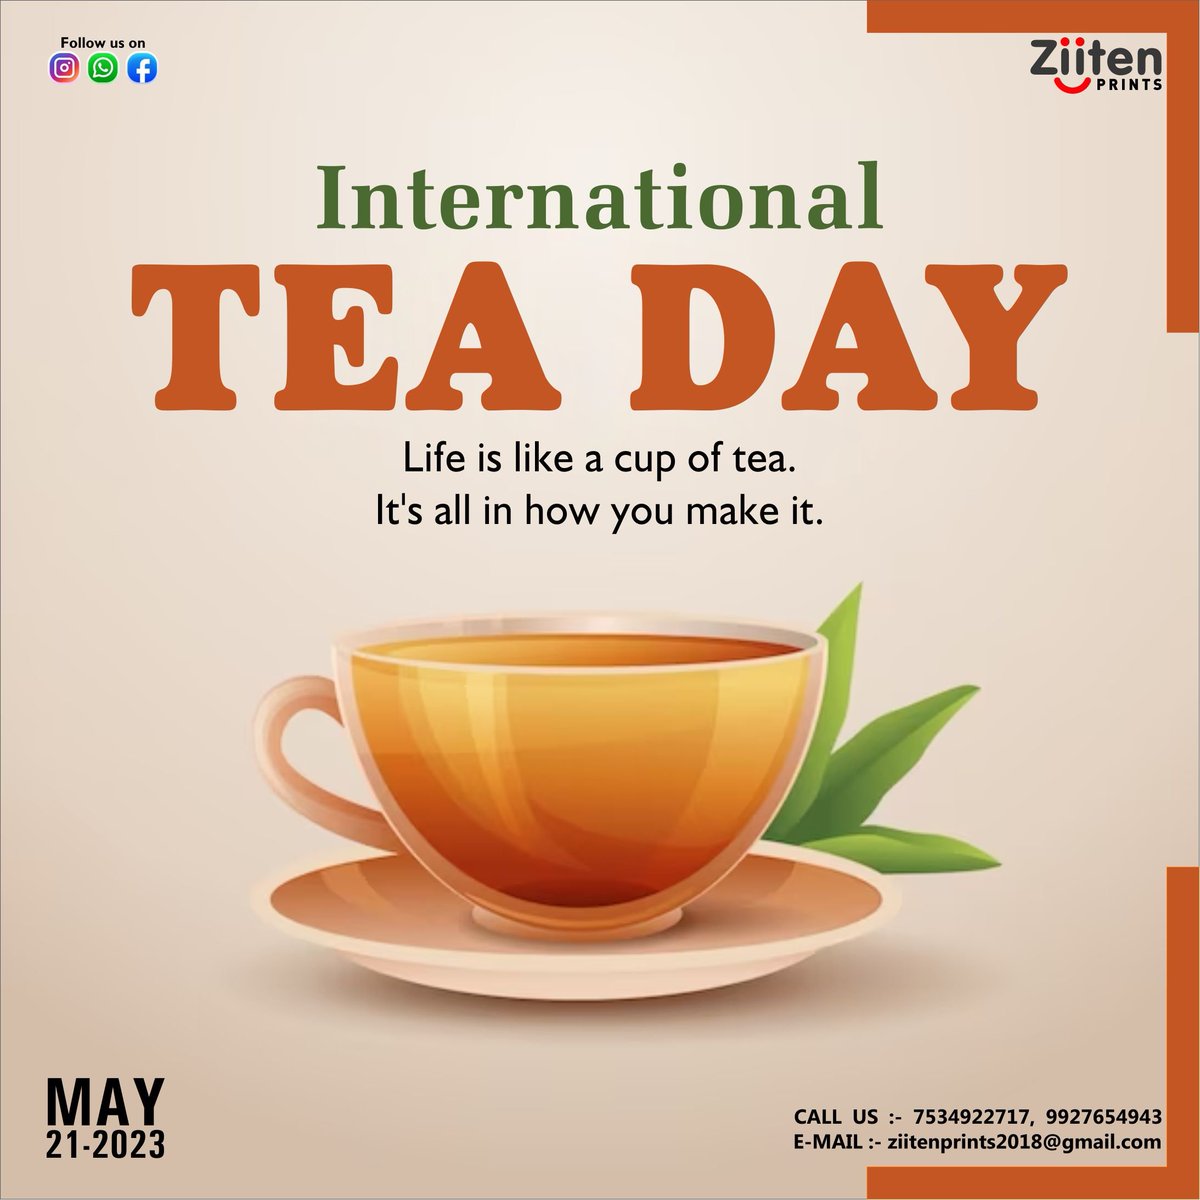 #internationalteaday #tea #chai #tealover #teatime #teaday #chailovers #greentea #chaiislove #chaipecharcha #indiantea #india #teaislife #chaitime